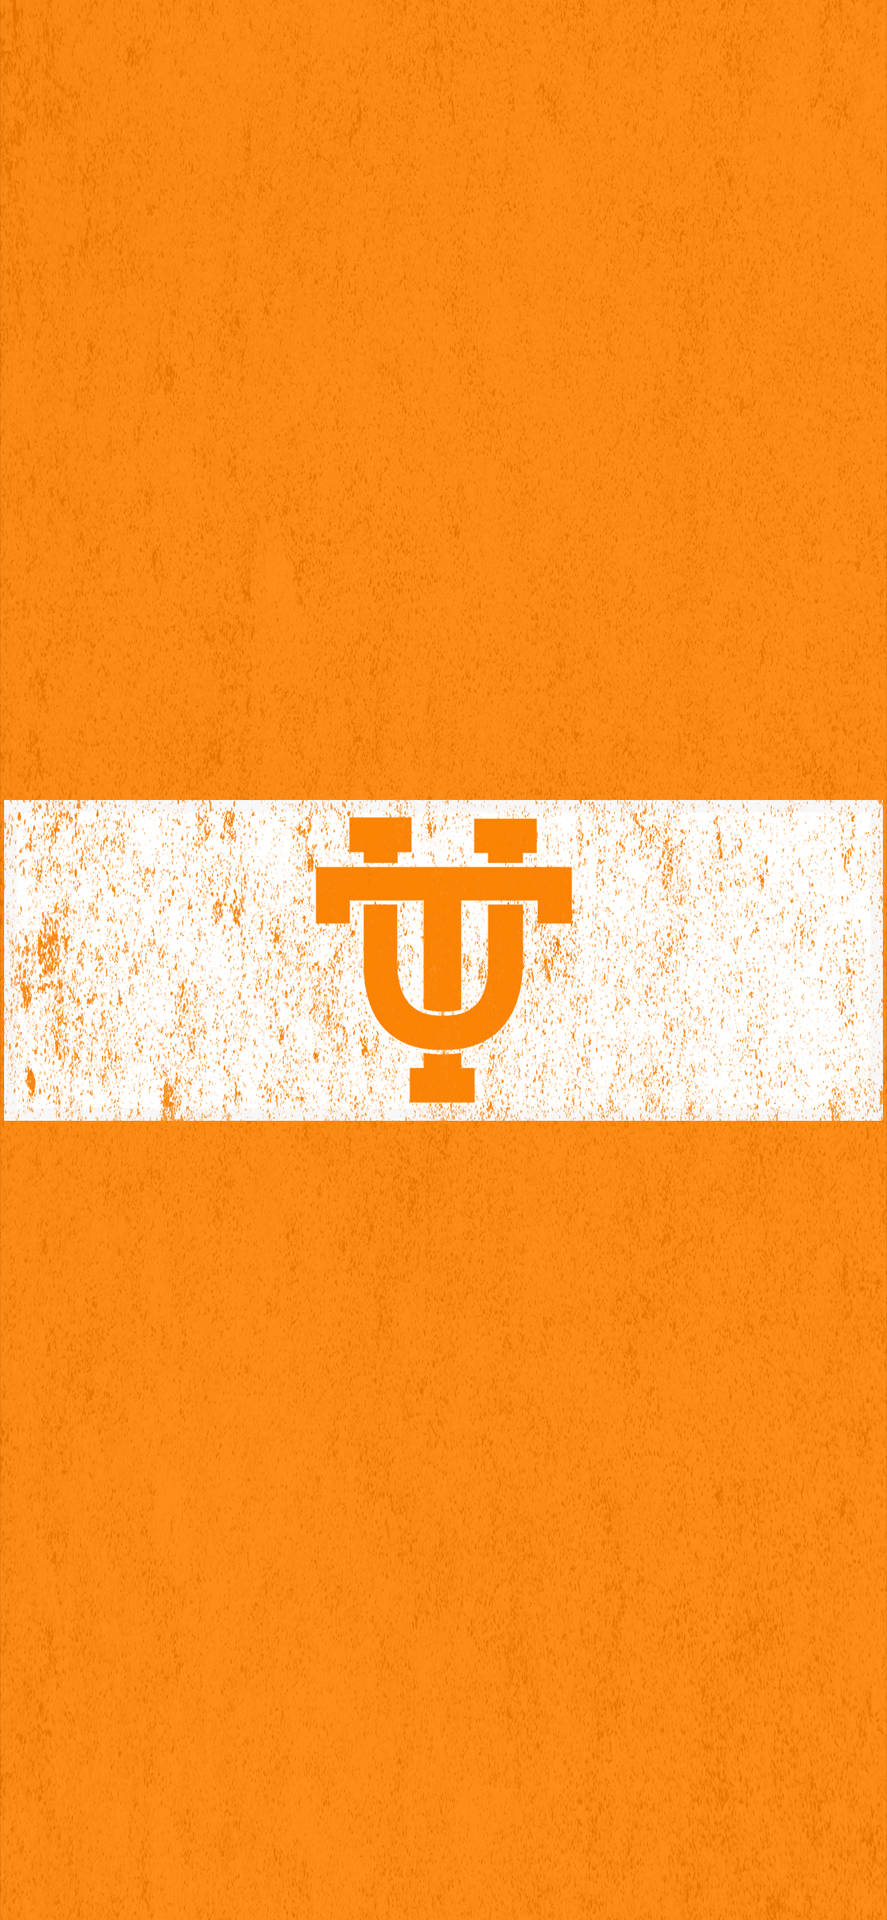 Logoda Universidade De Tennessee Em Formato Retrato. Papel de Parede